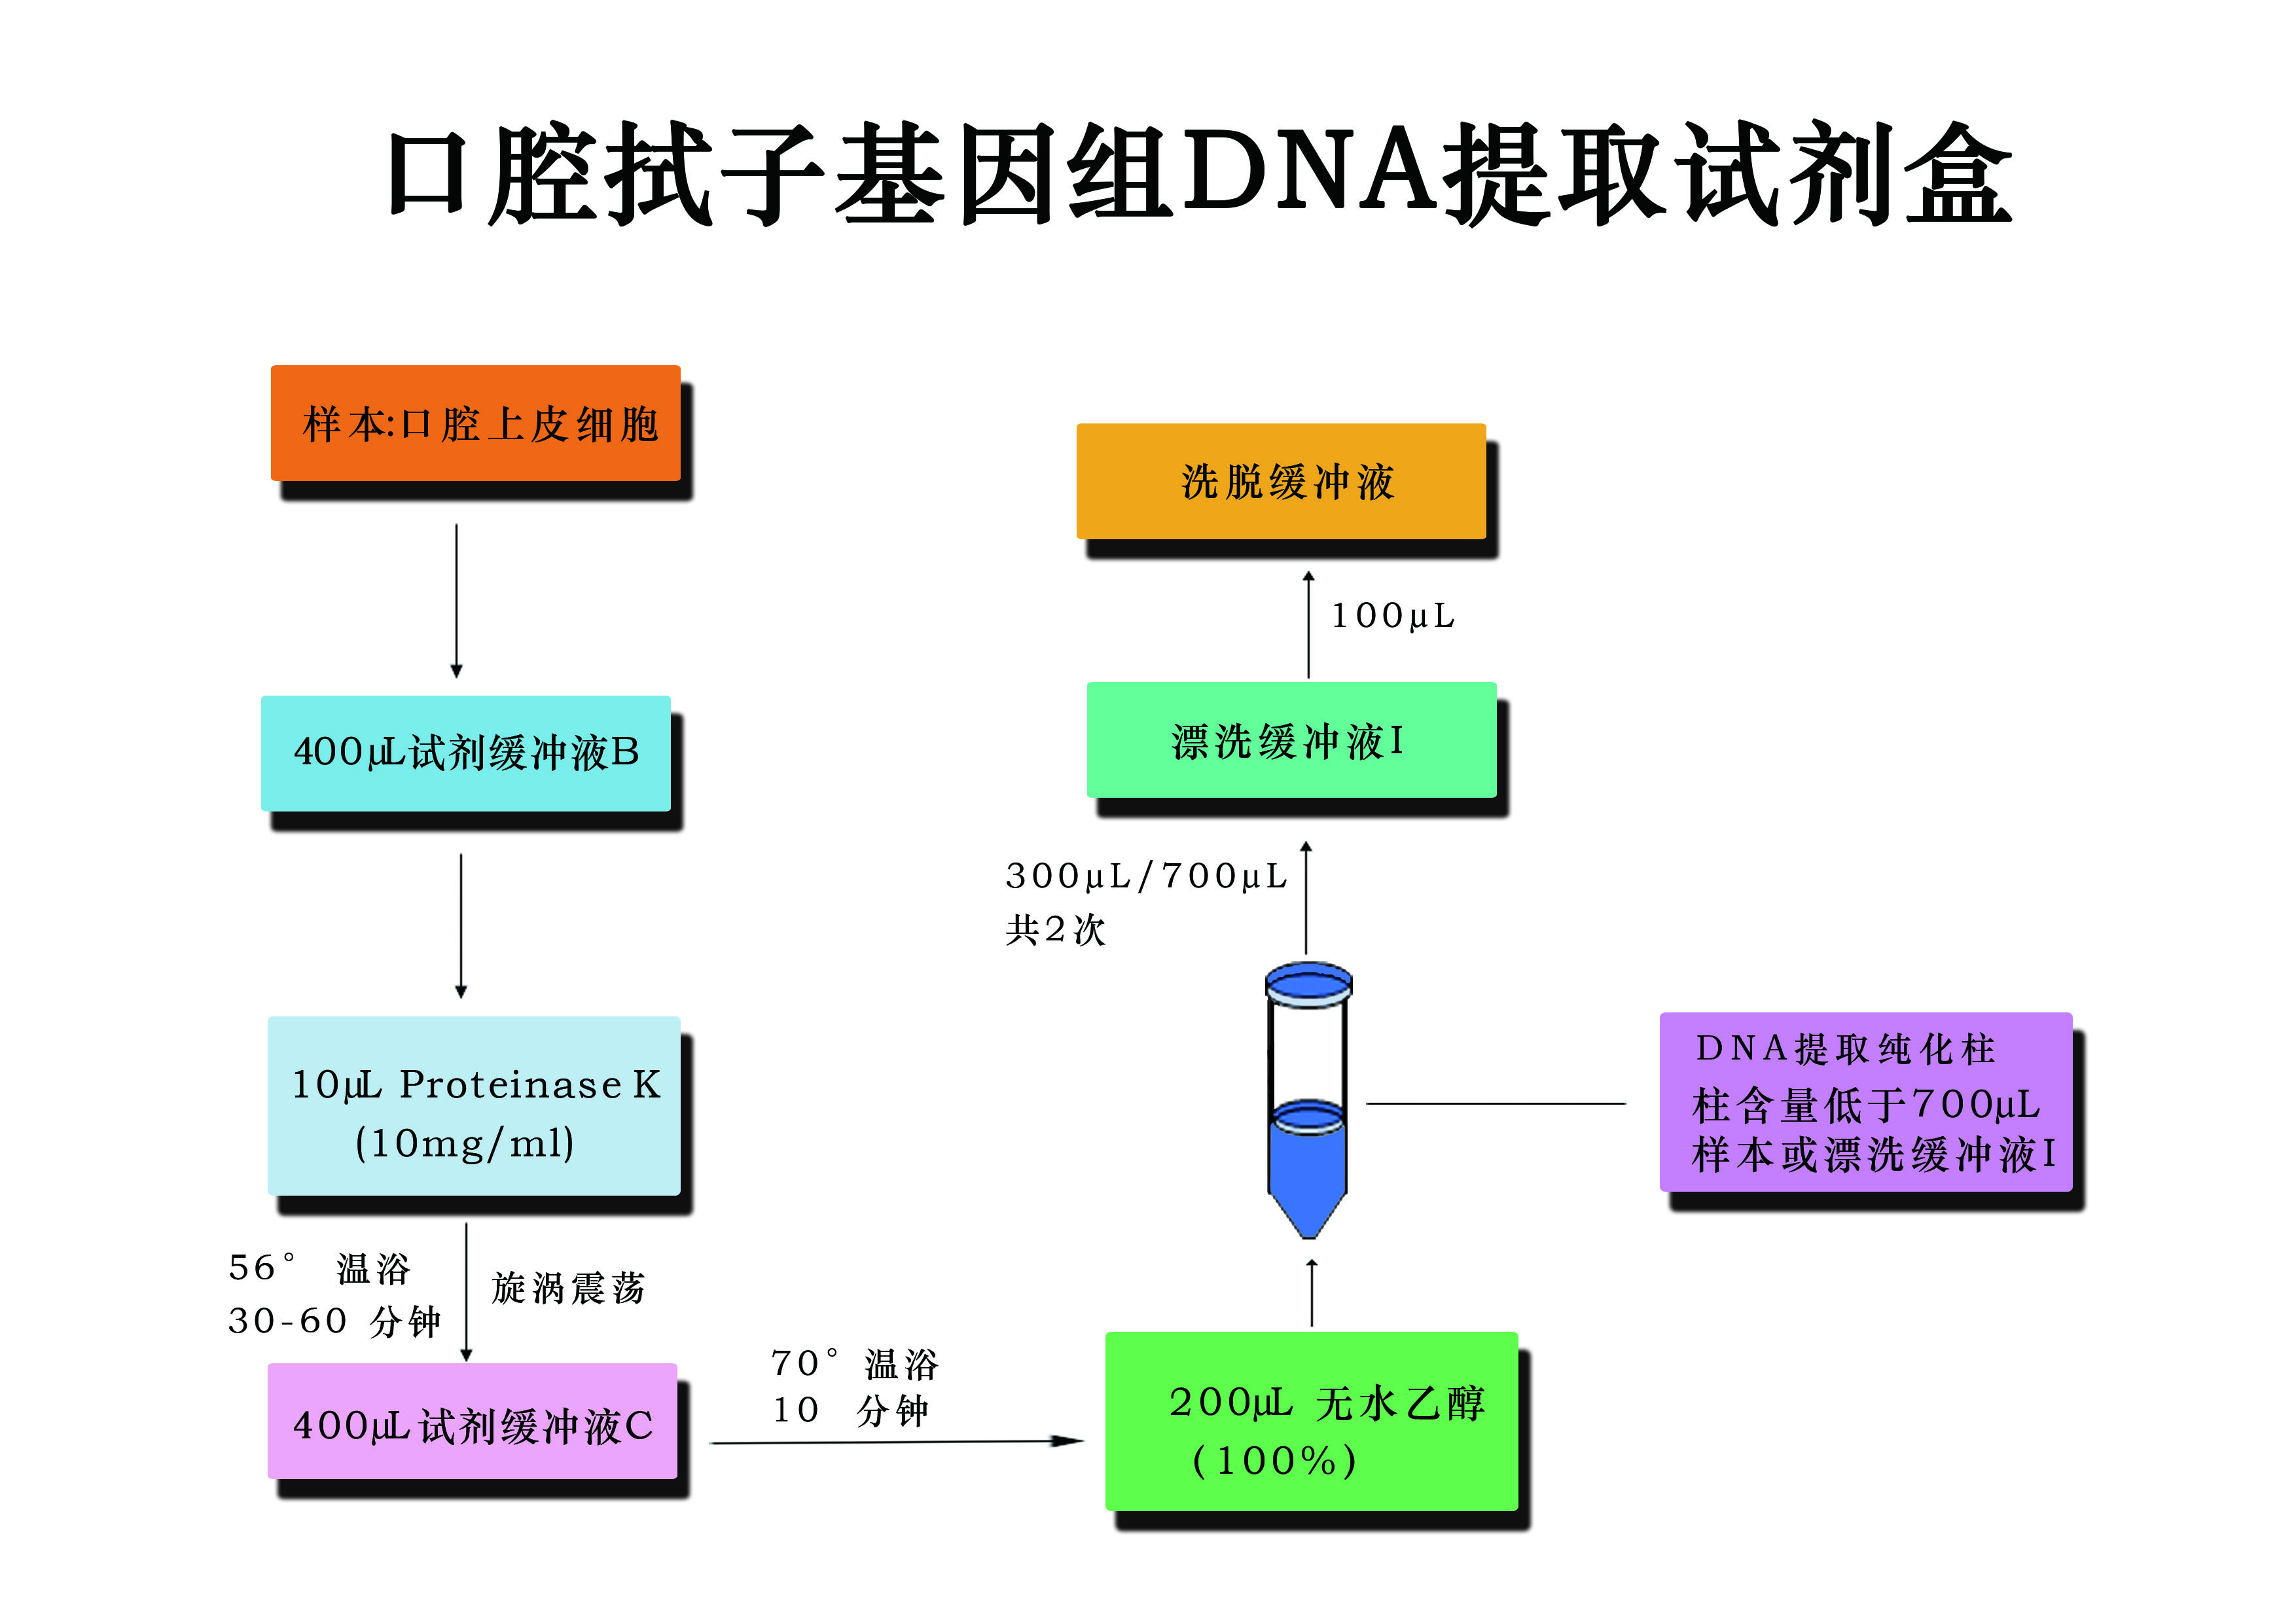 口腔式子基因組DNA提取試劑盒流程圖